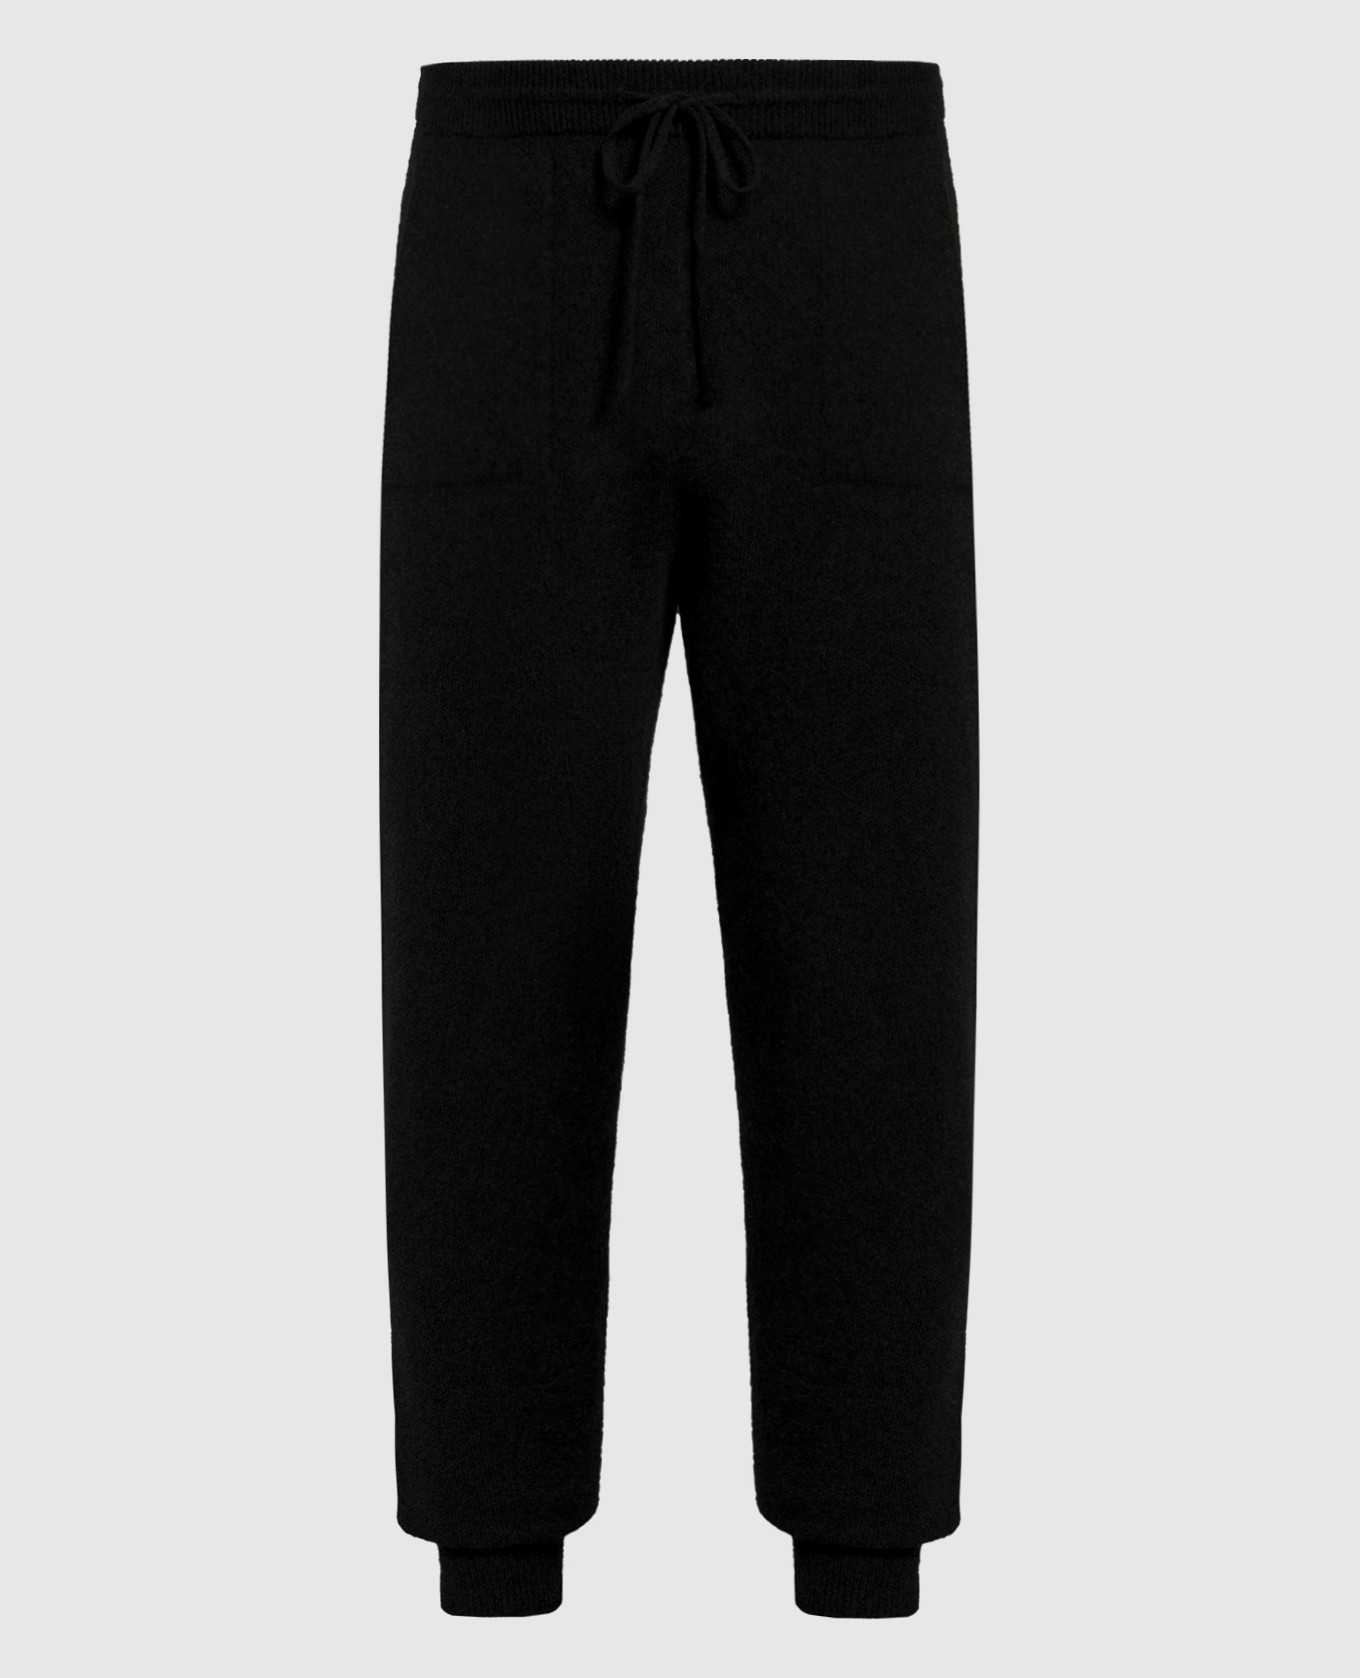 Black cashmere sweatpants